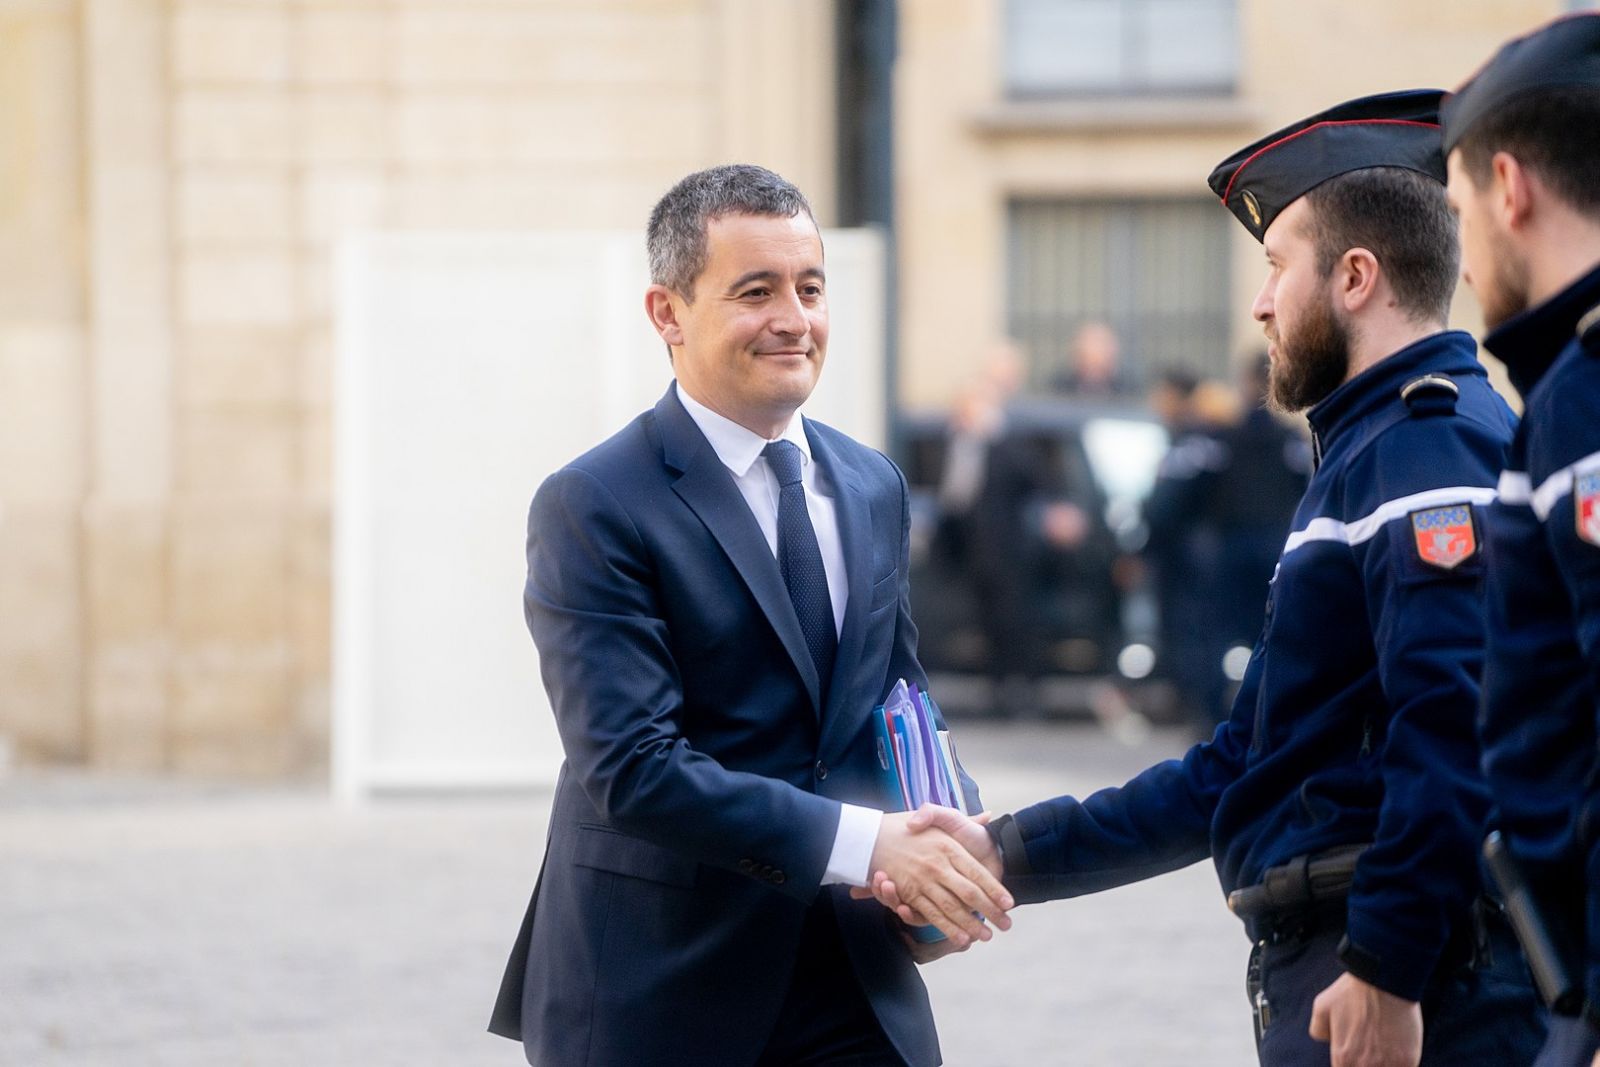 Darmanin Soutien Sarkozy Blanquer Lanceur Alerte 18h Politique 2 Mars 2021